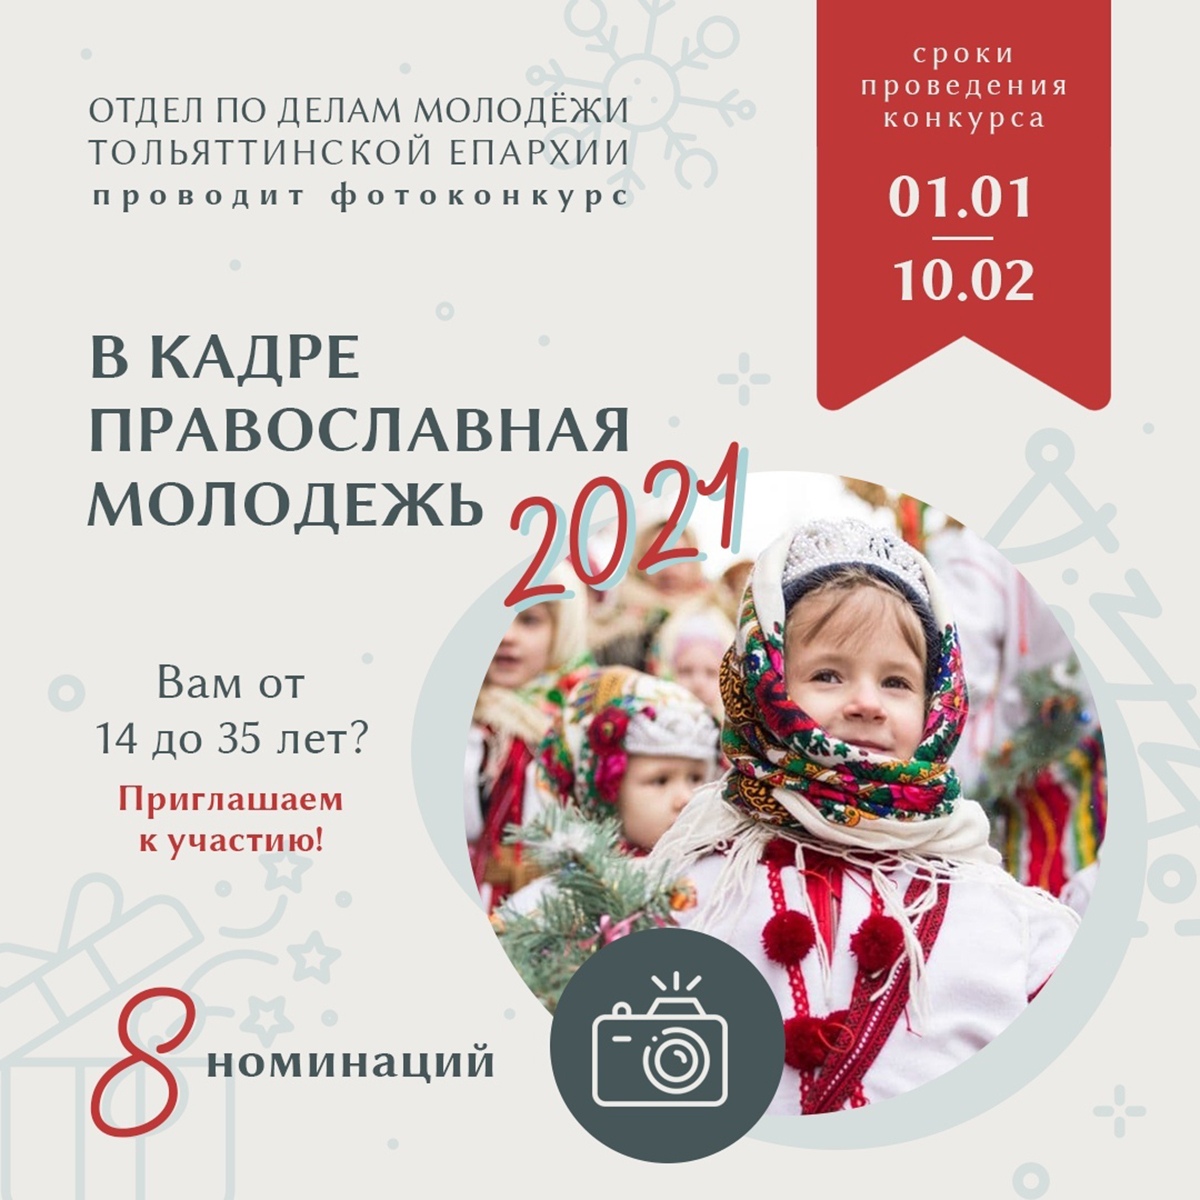 Фотоконкурс «В кадре православная молодёжь 2021»